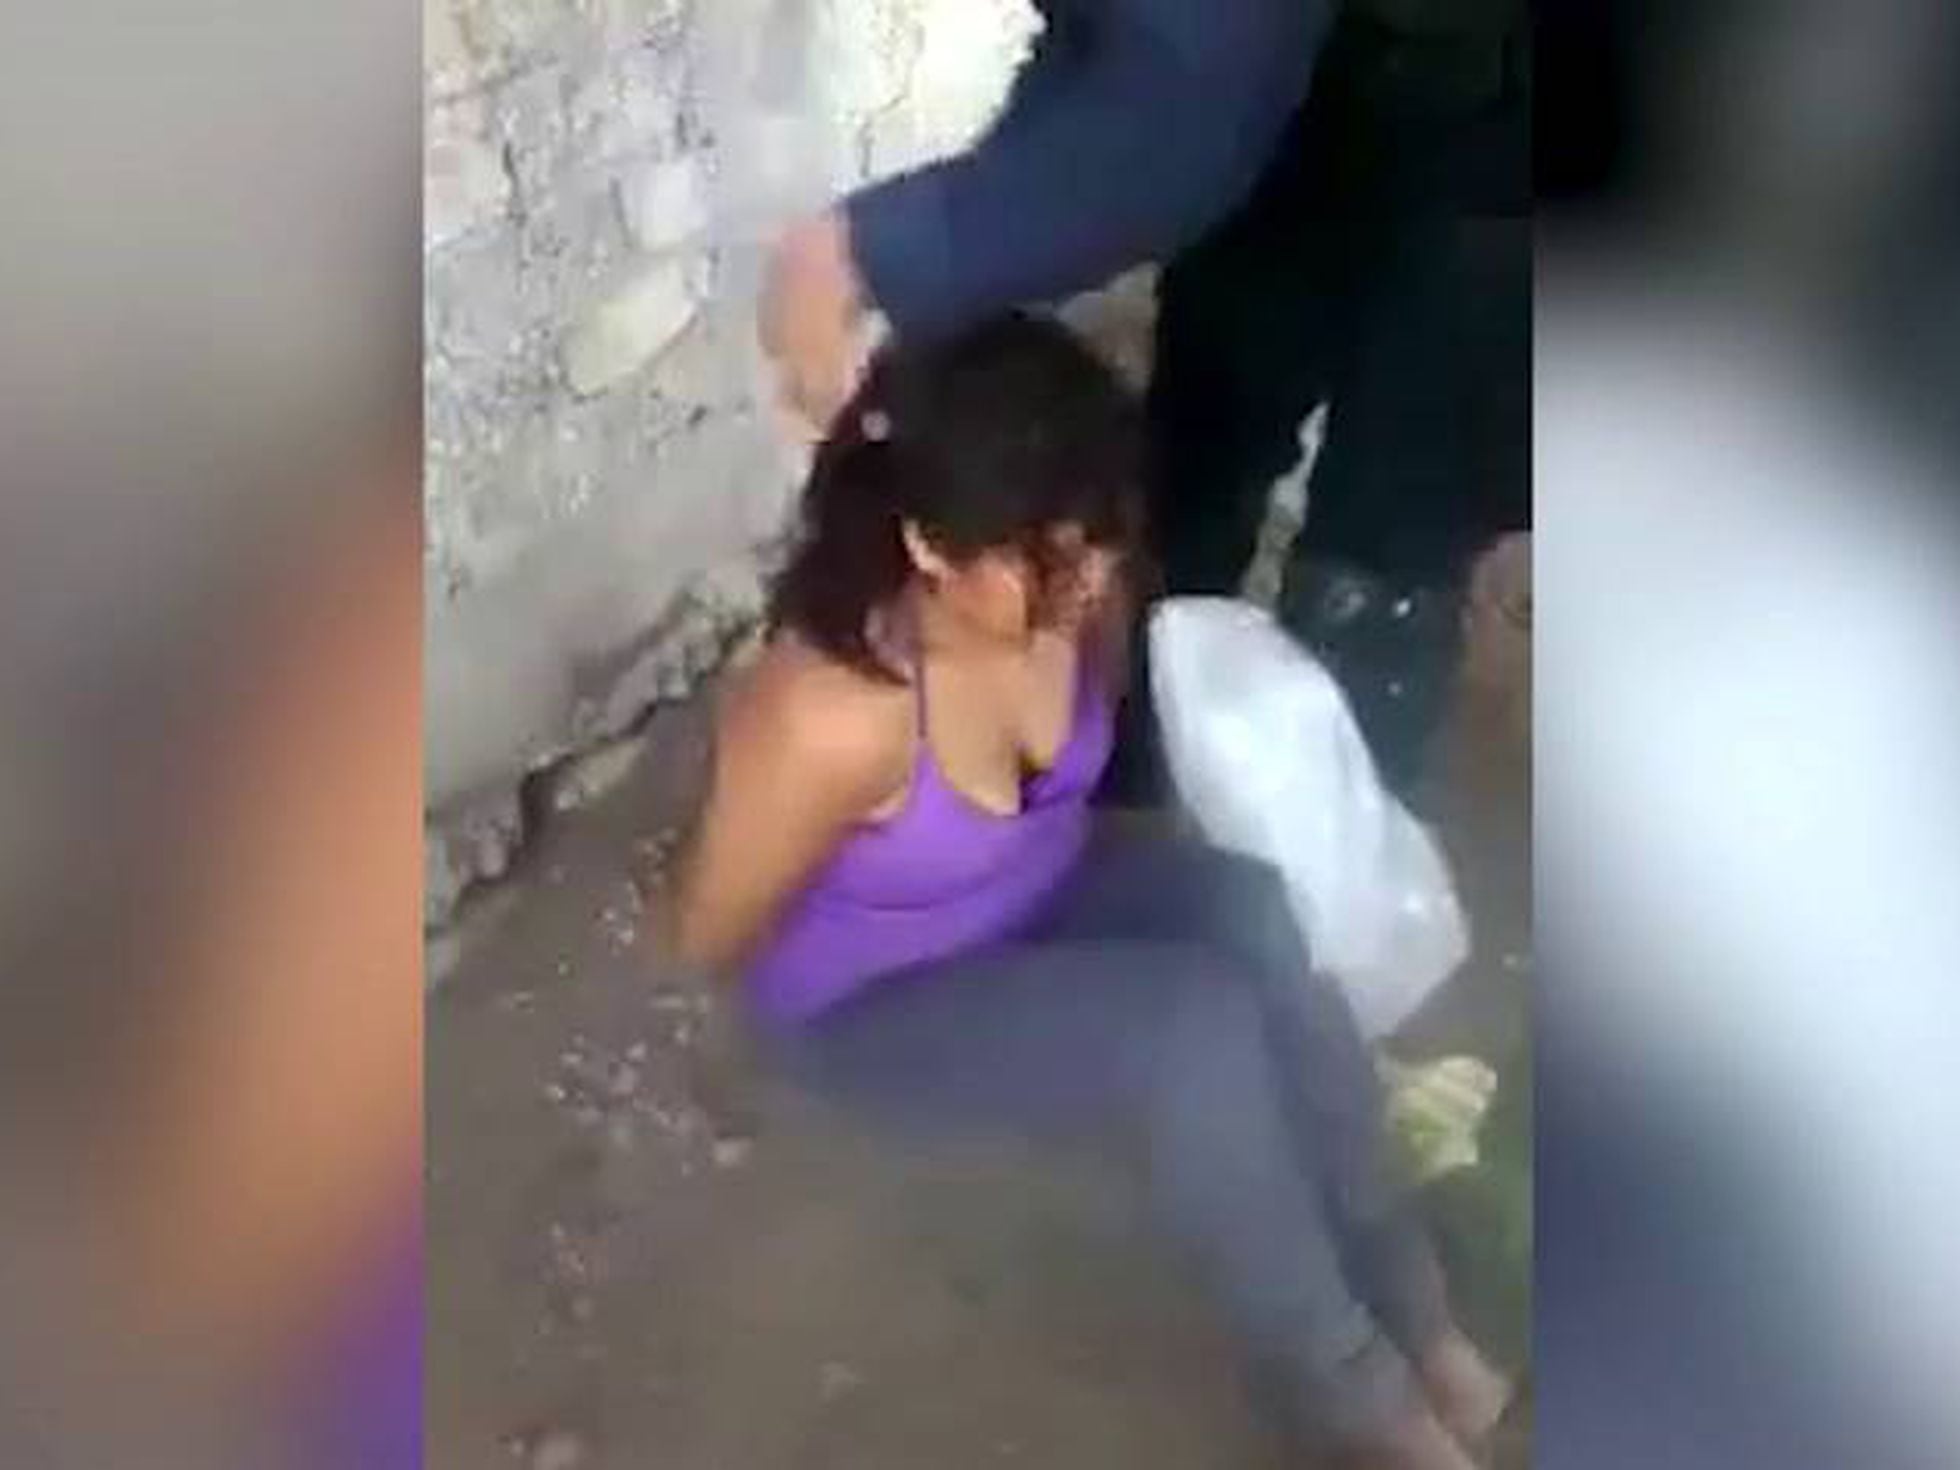 chantal duguay share videos narcos matando mujeres photos